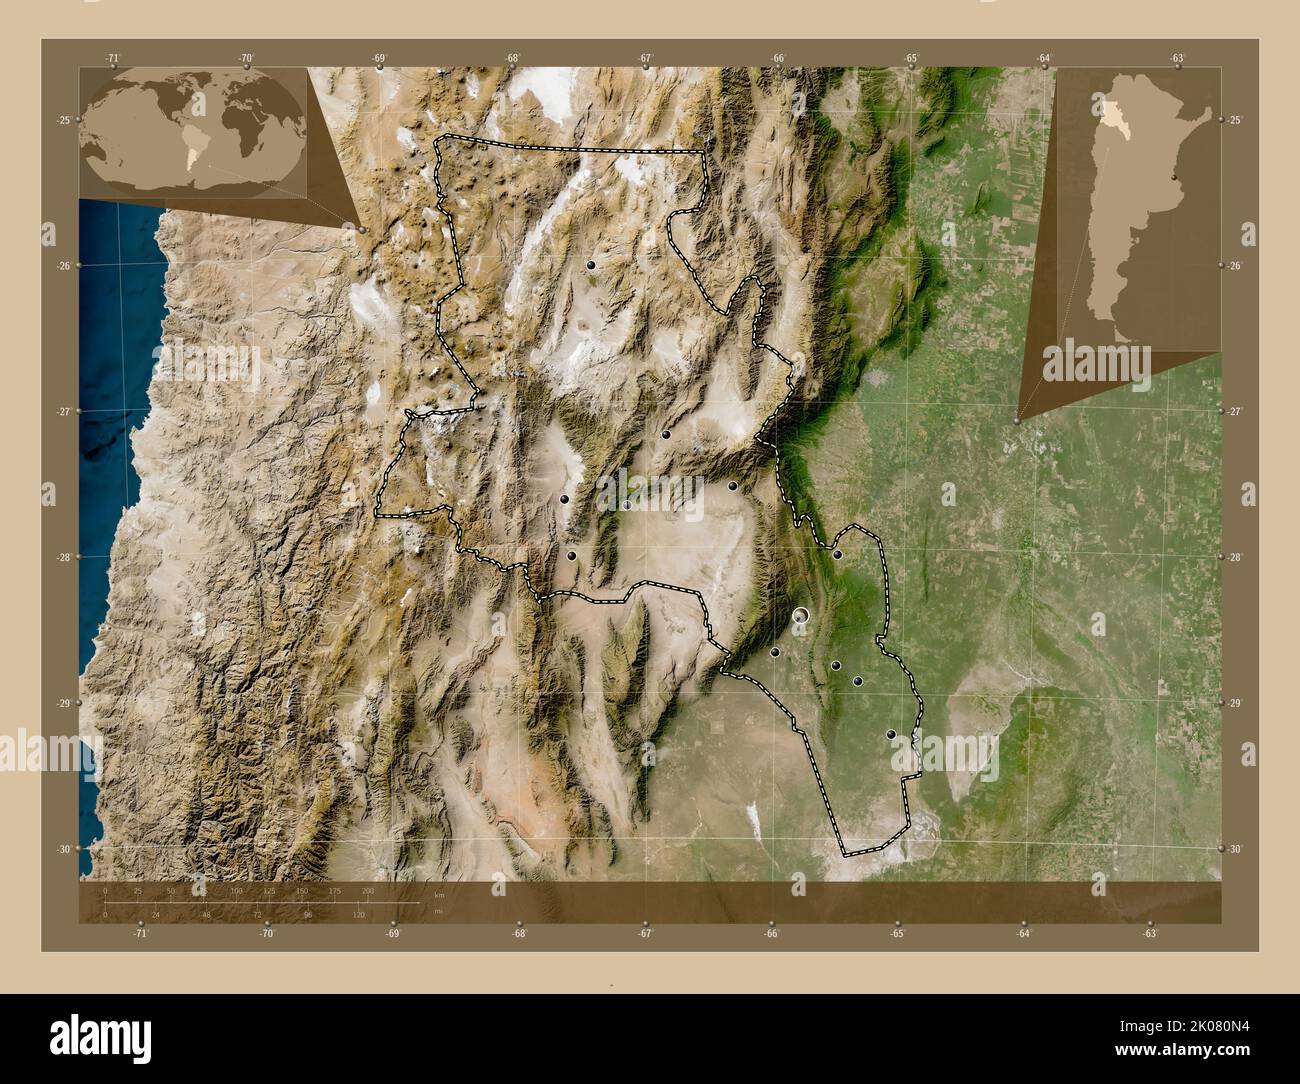 Catamarca, province d'Argentine. Carte satellite basse résolution. Lieux des principales villes de la région. Cartes d'emplacement auxiliaire d'angle Banque D'Images